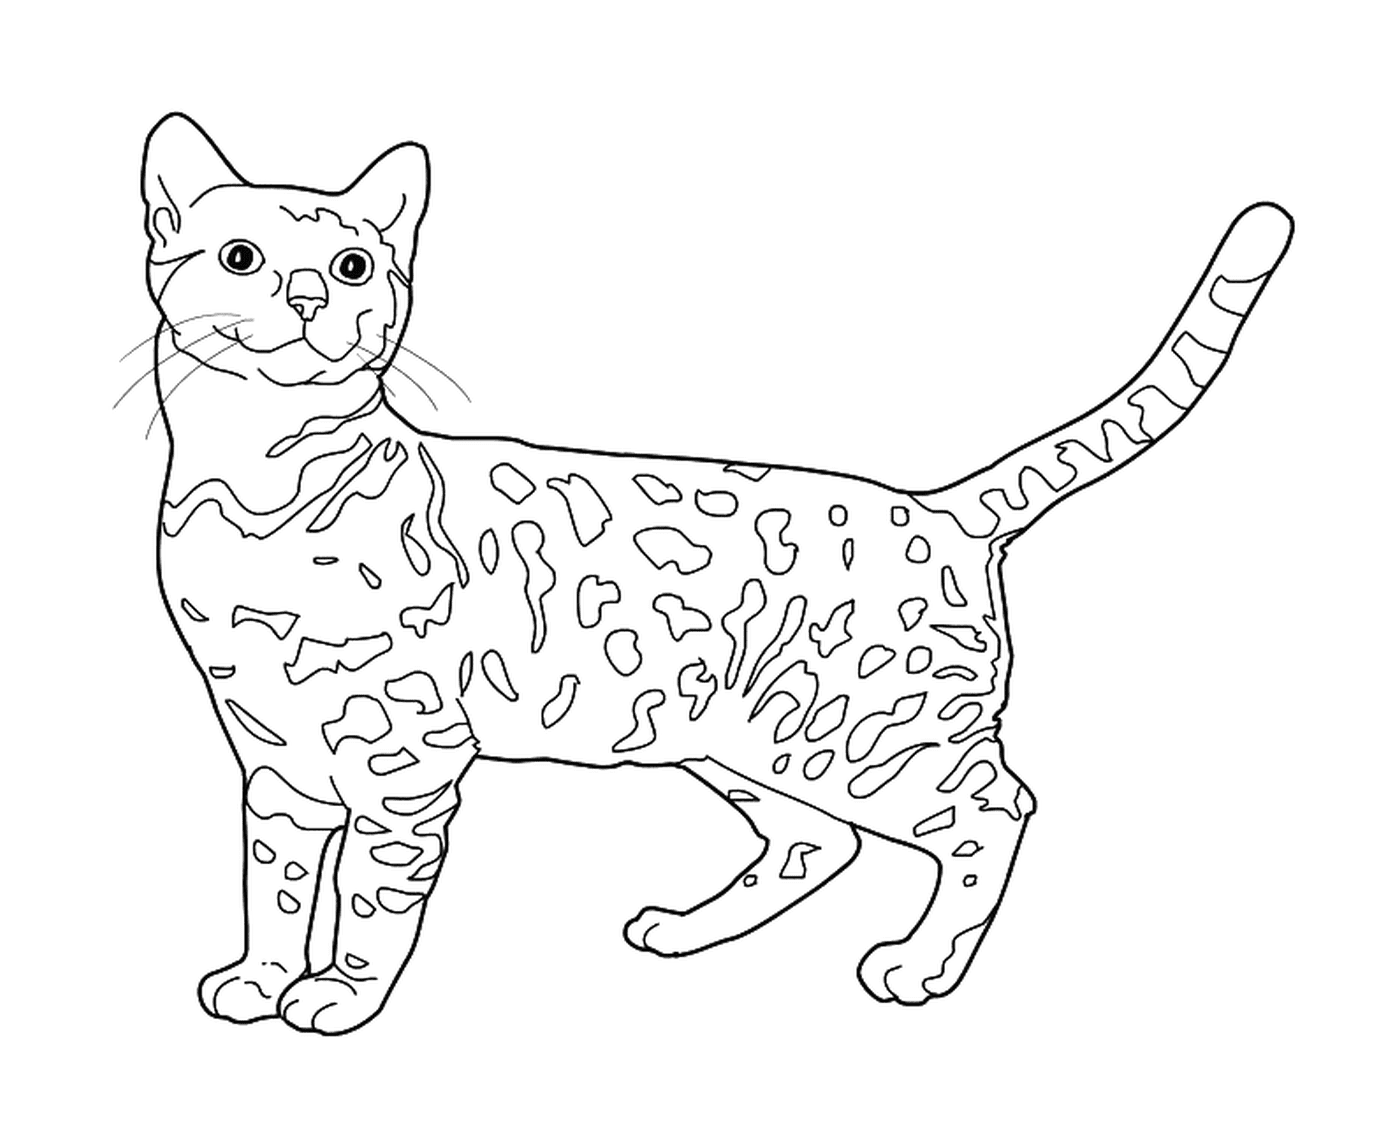   Un Bengal, un chat qui ressemble à un léopard 